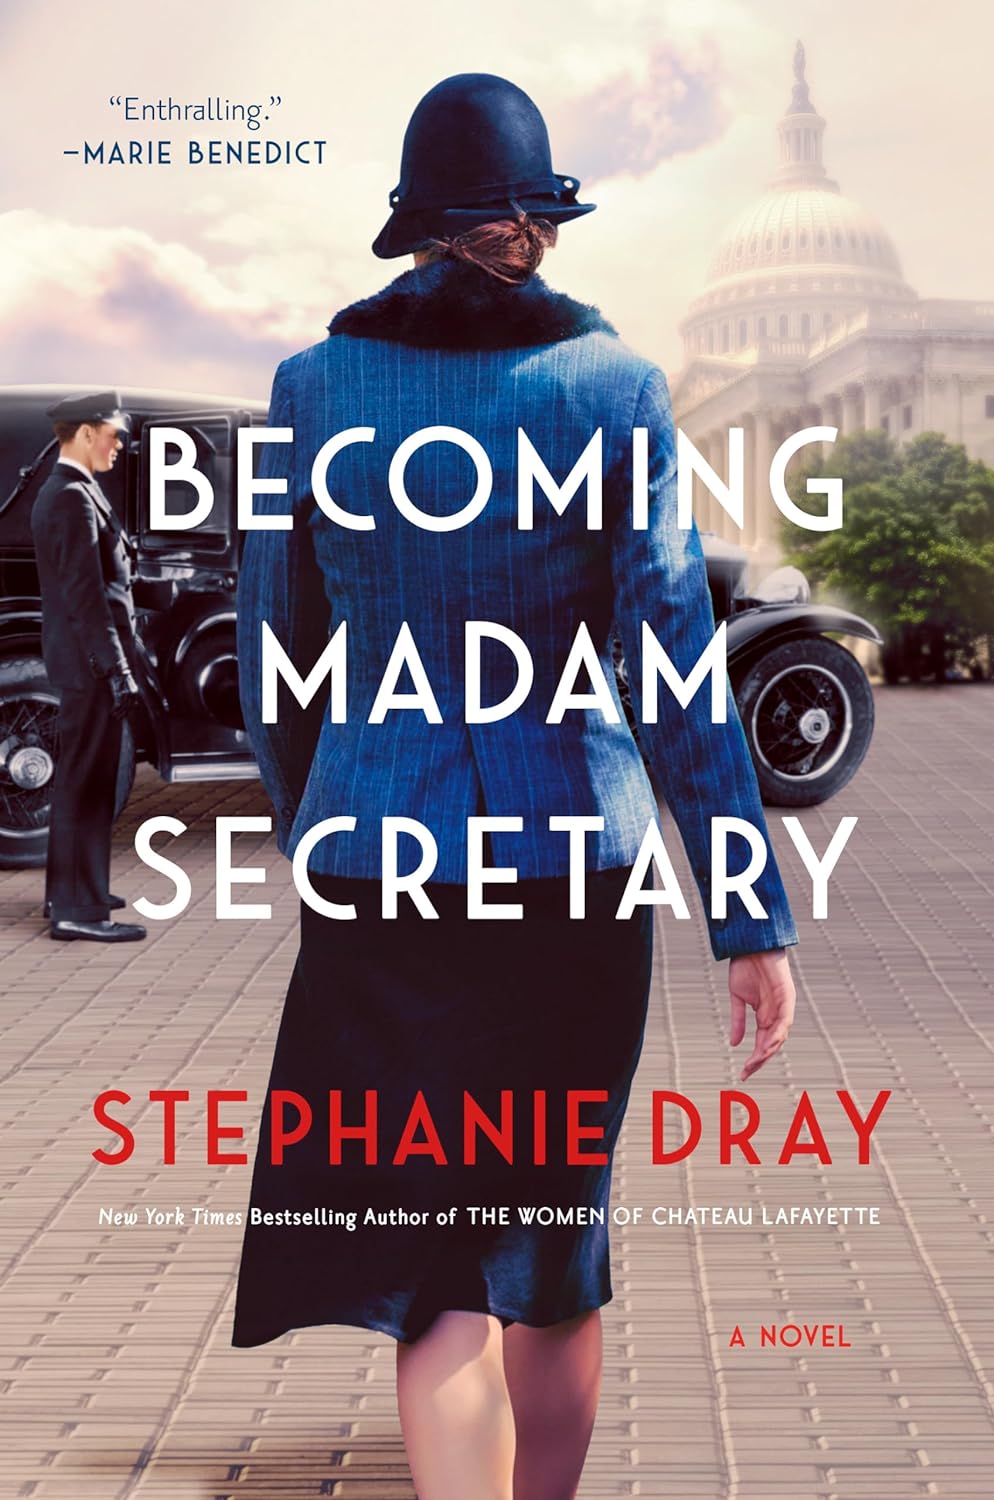 Image for "Becoming Madam Secretary"